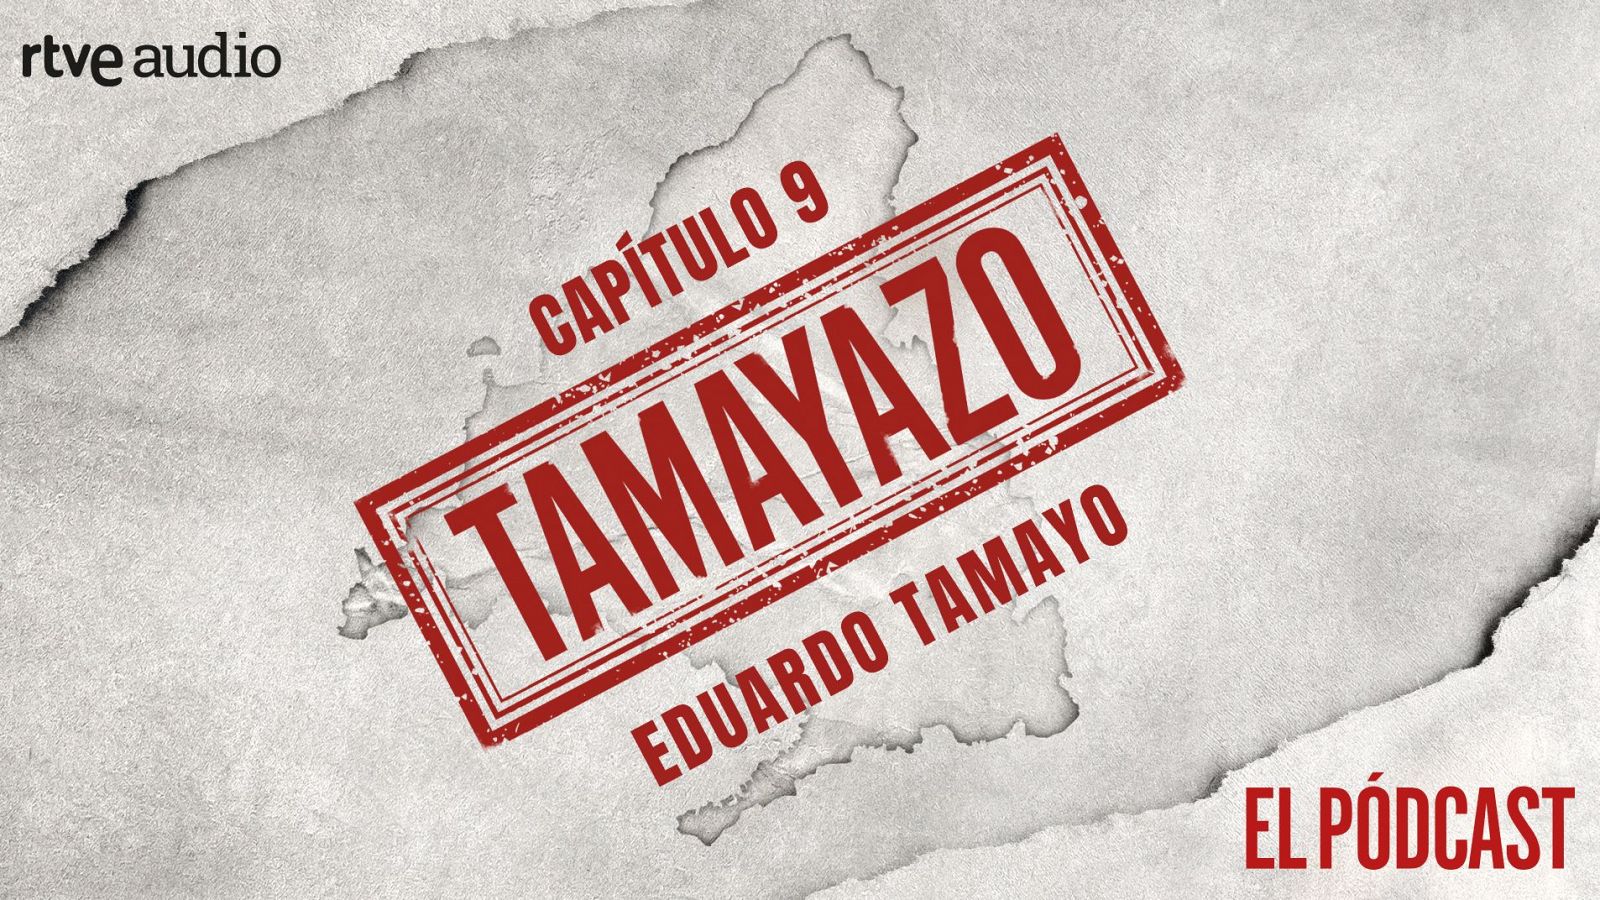 Cartel del capítulo 9 de Tamayazo, el pódcast